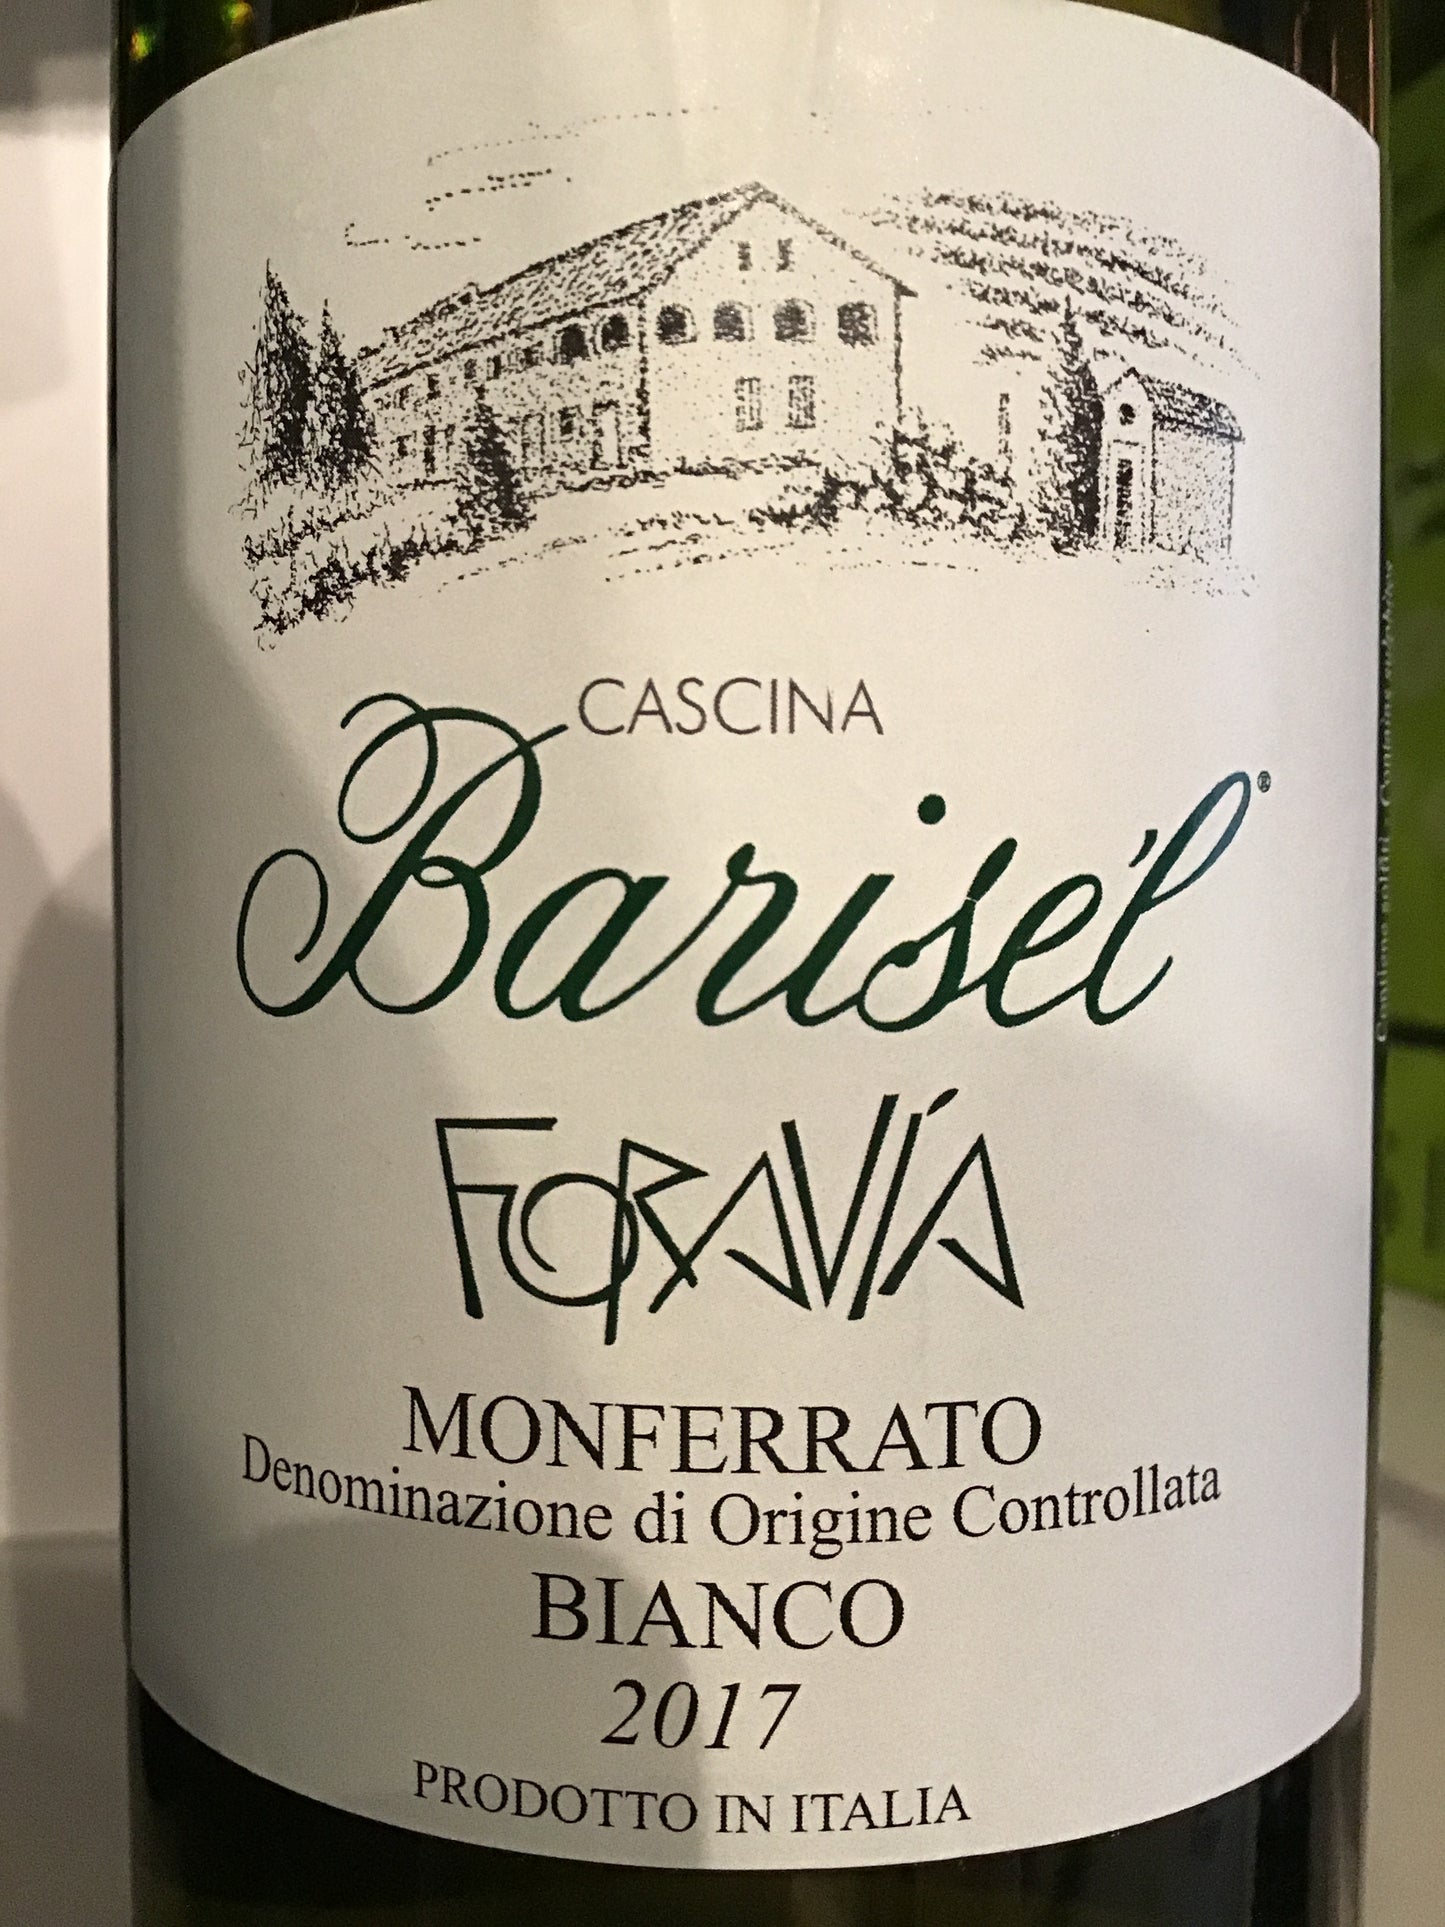 Barisel "Foravia" - Favorita - Italy